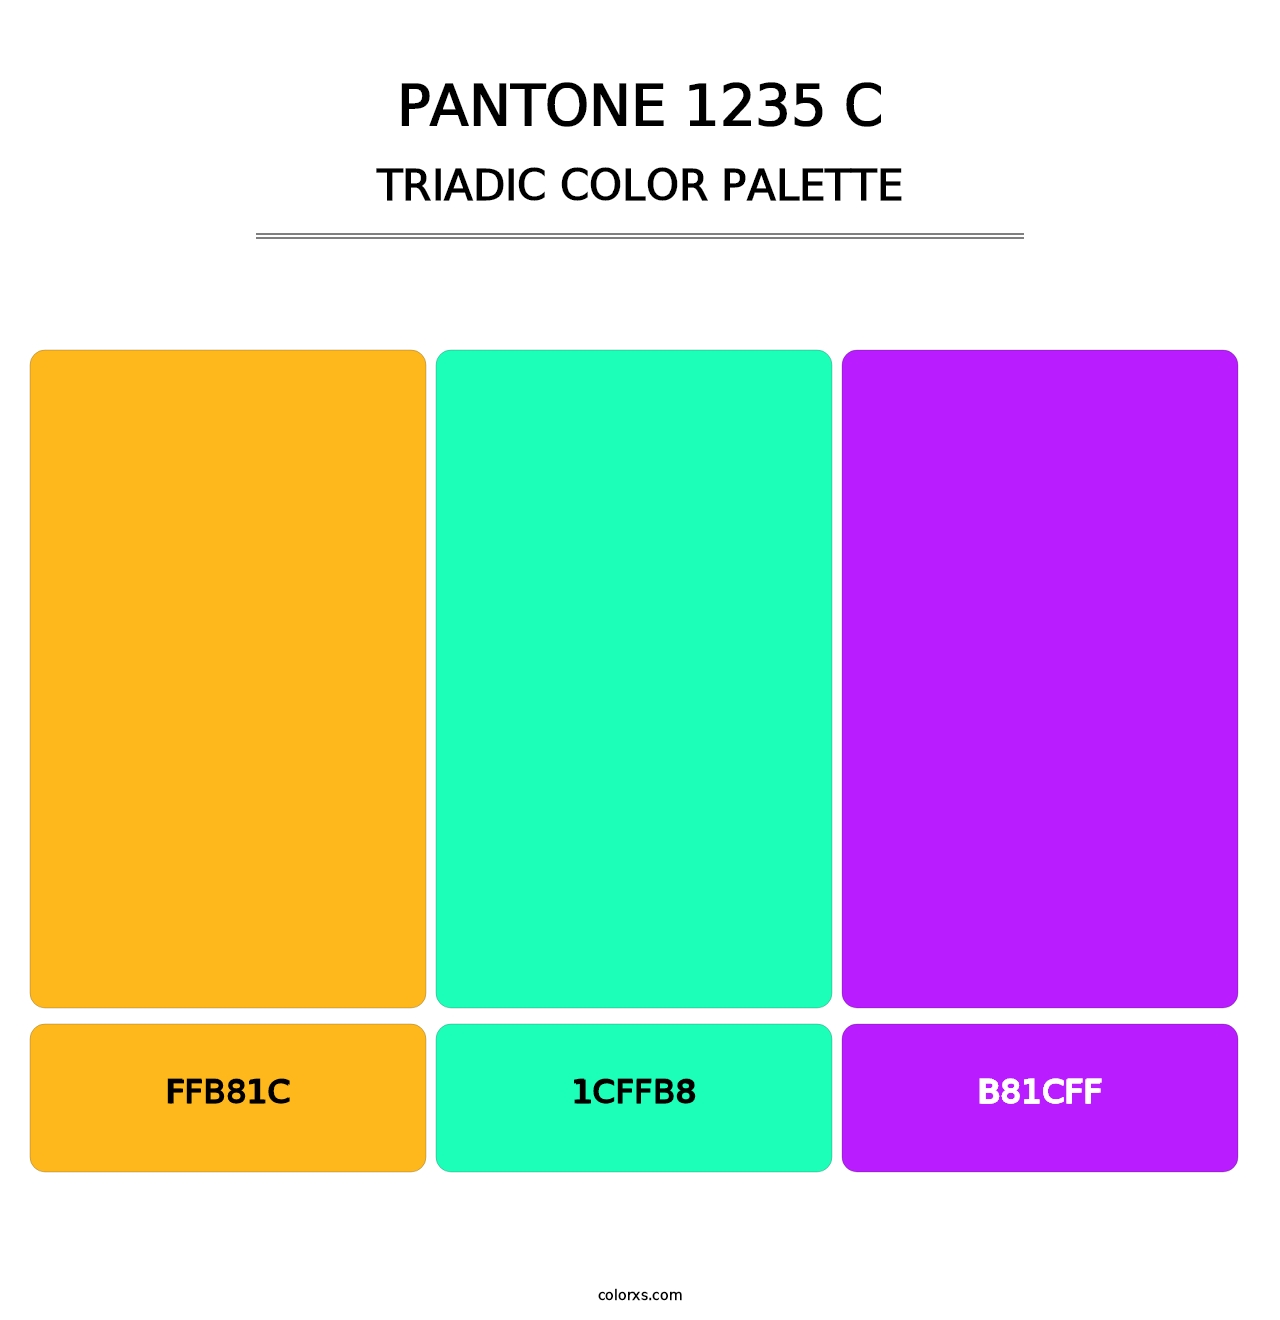 PANTONE 1235 C - Triadic Color Palette